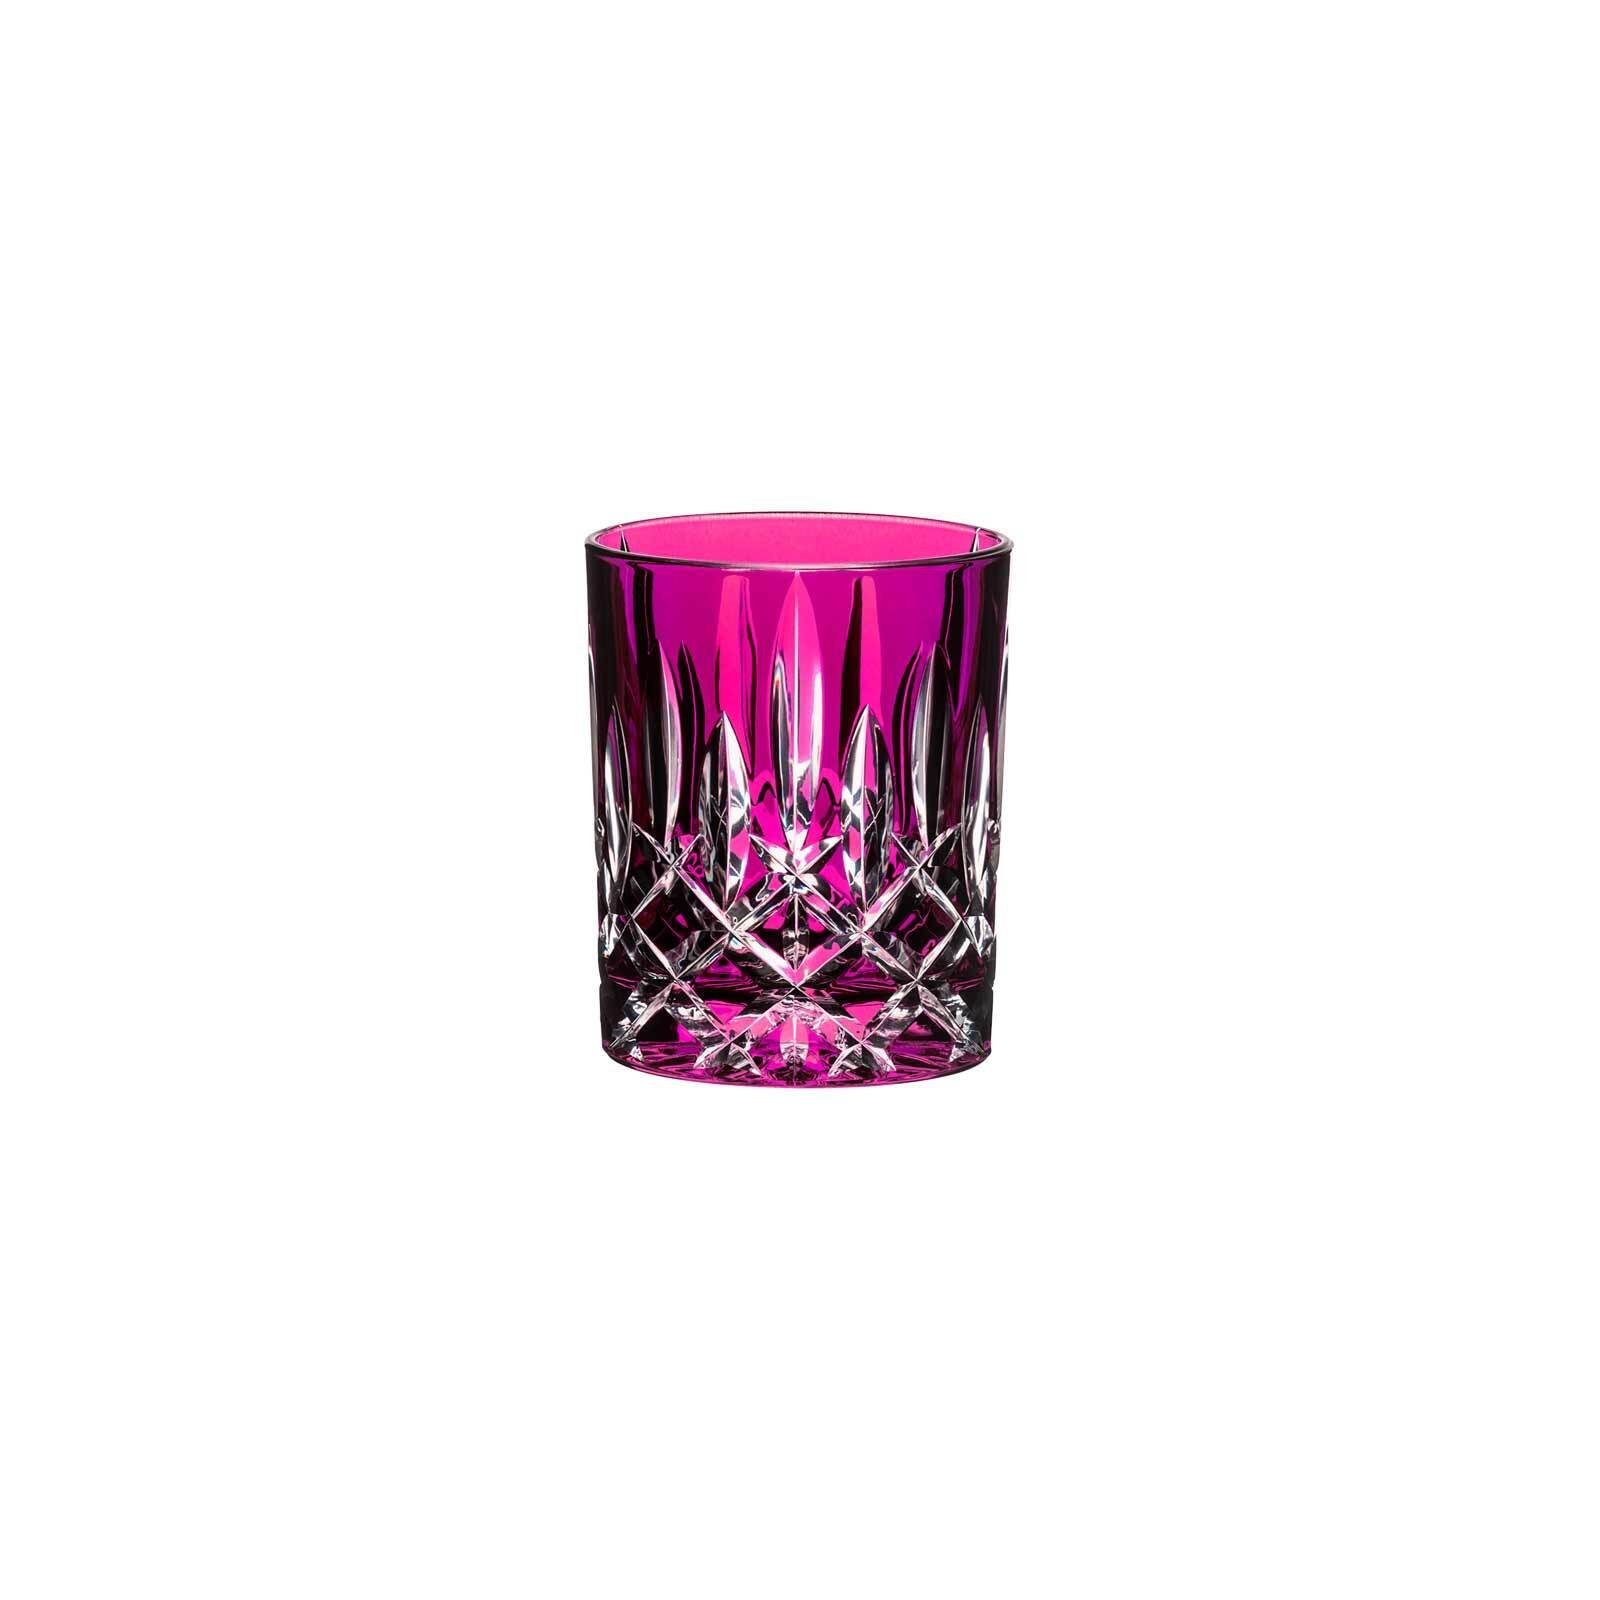 Glas Pink ml, Laudon Whiskyglas 295 Whiskyglas RIEDEL Glas